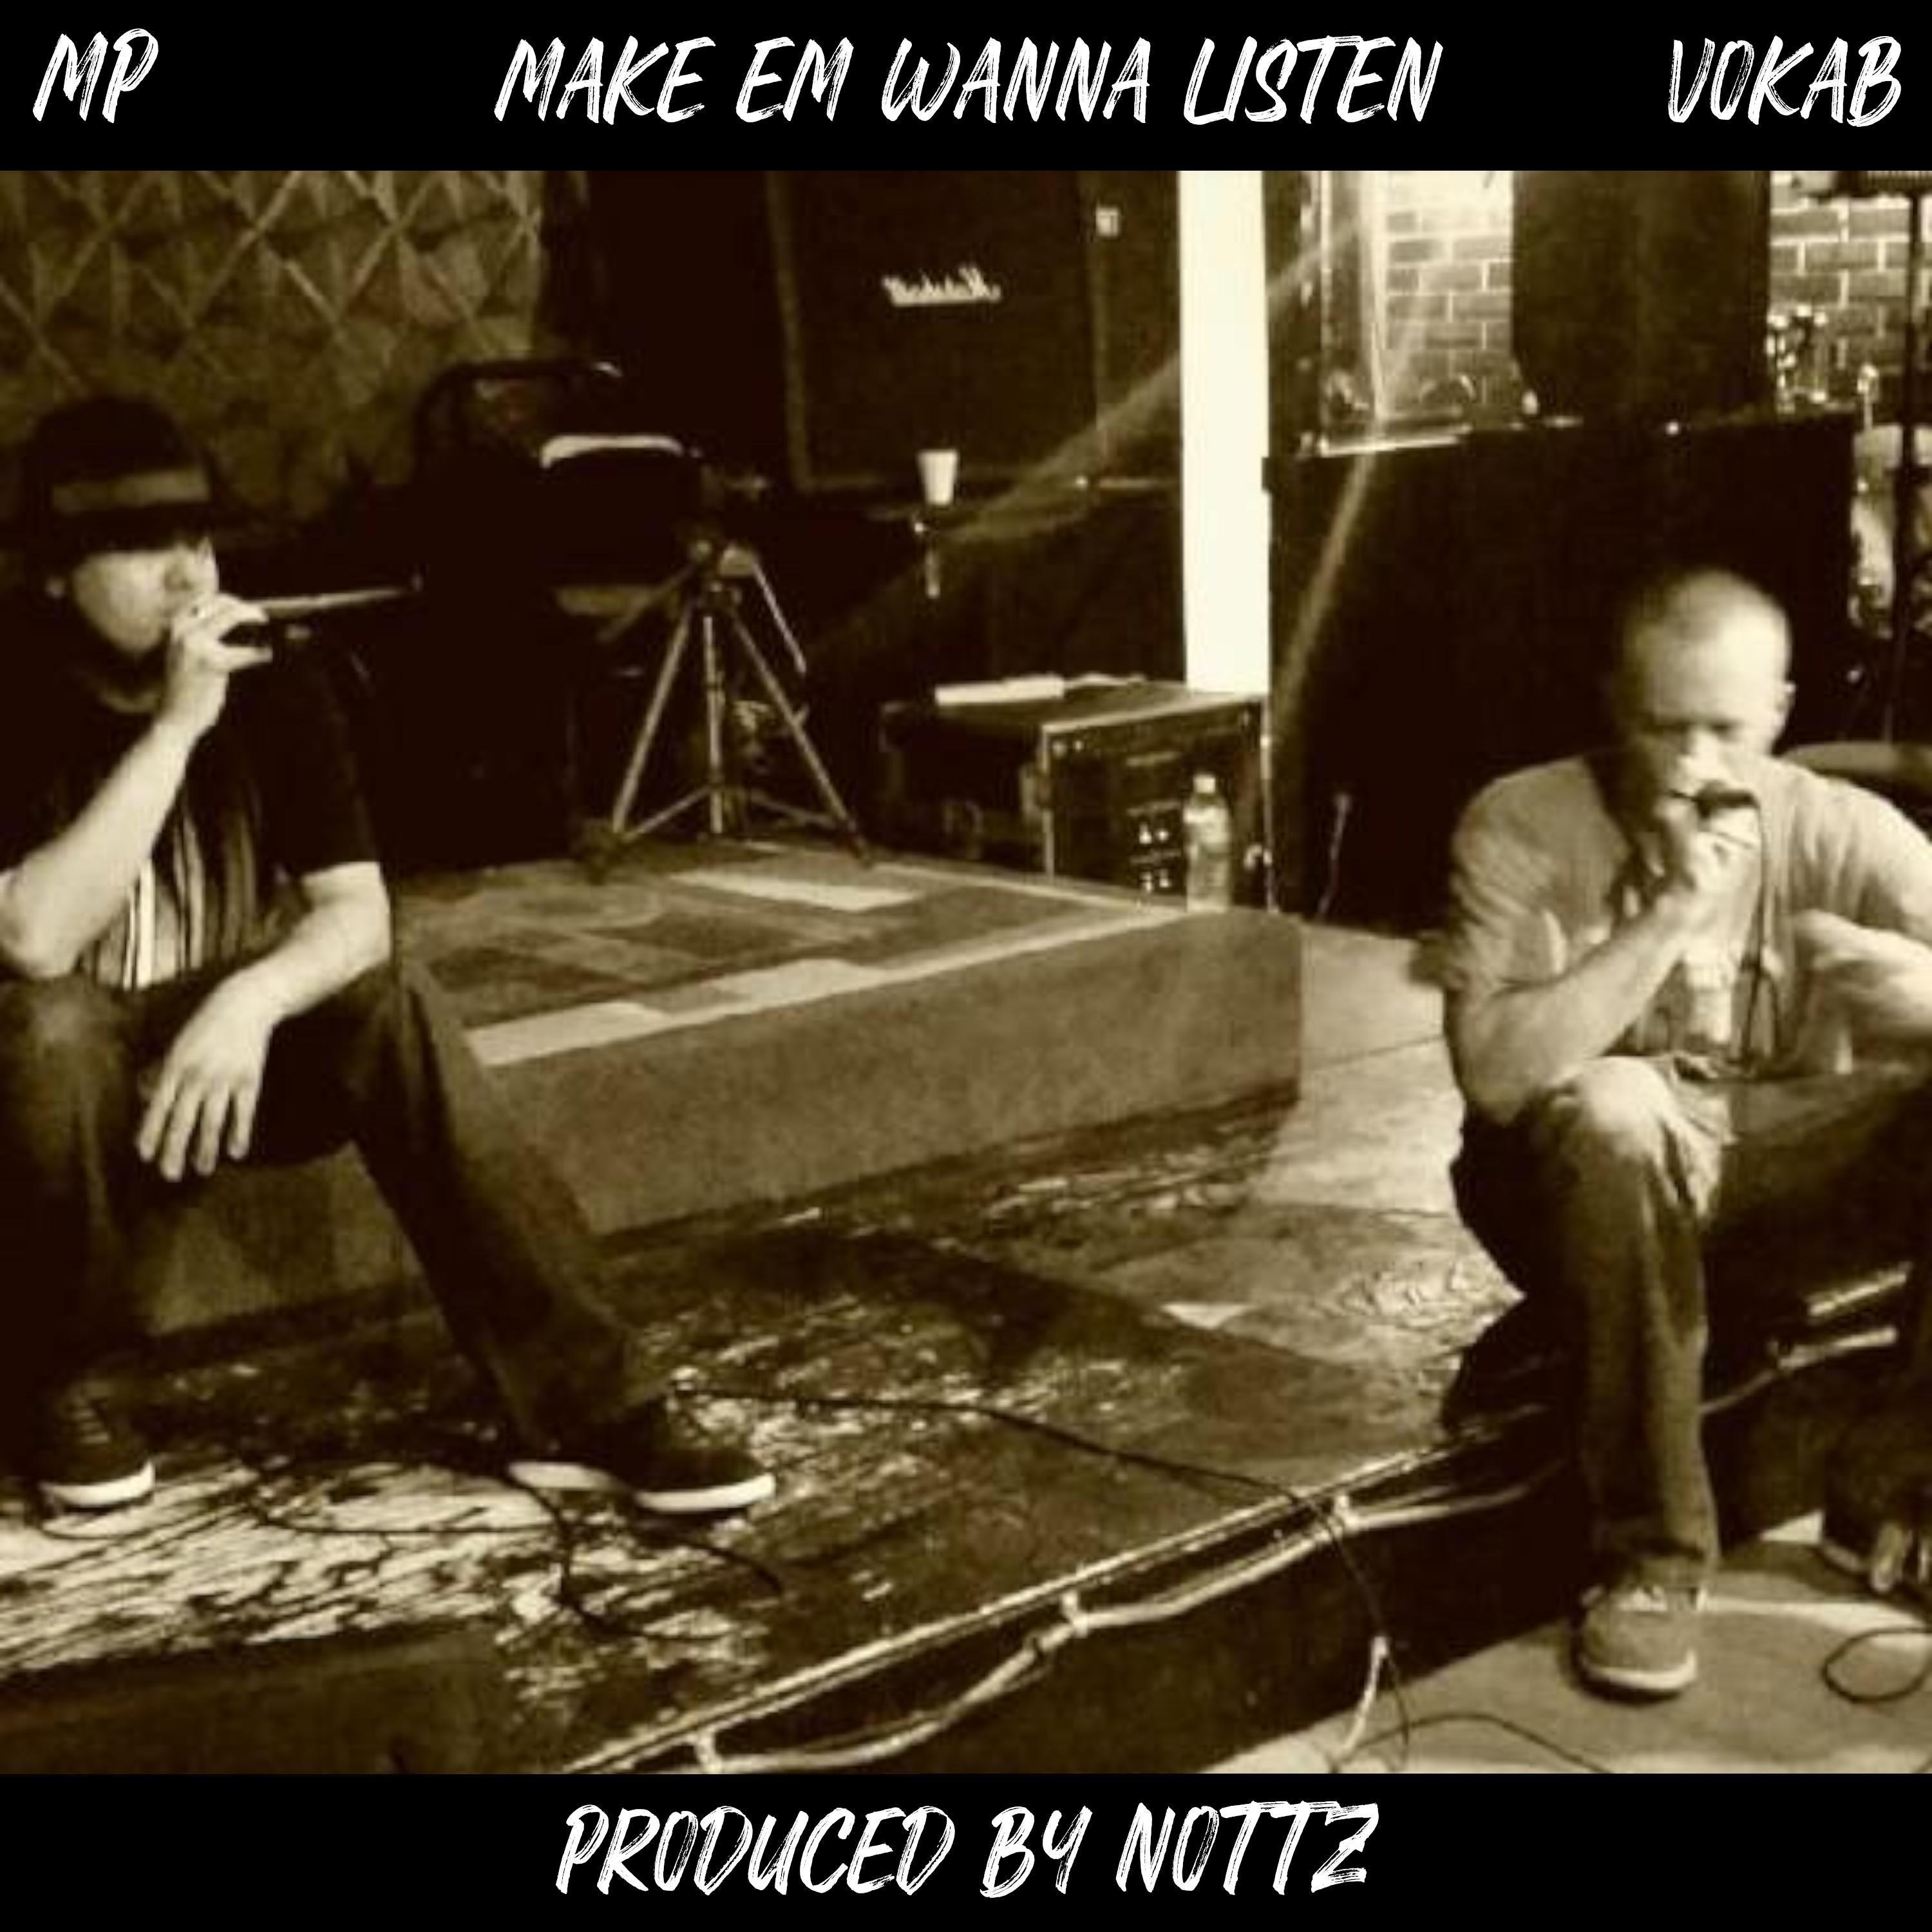 Master Peace - Make 'Em Wanna Listen (feat. Vokab & Nottz)